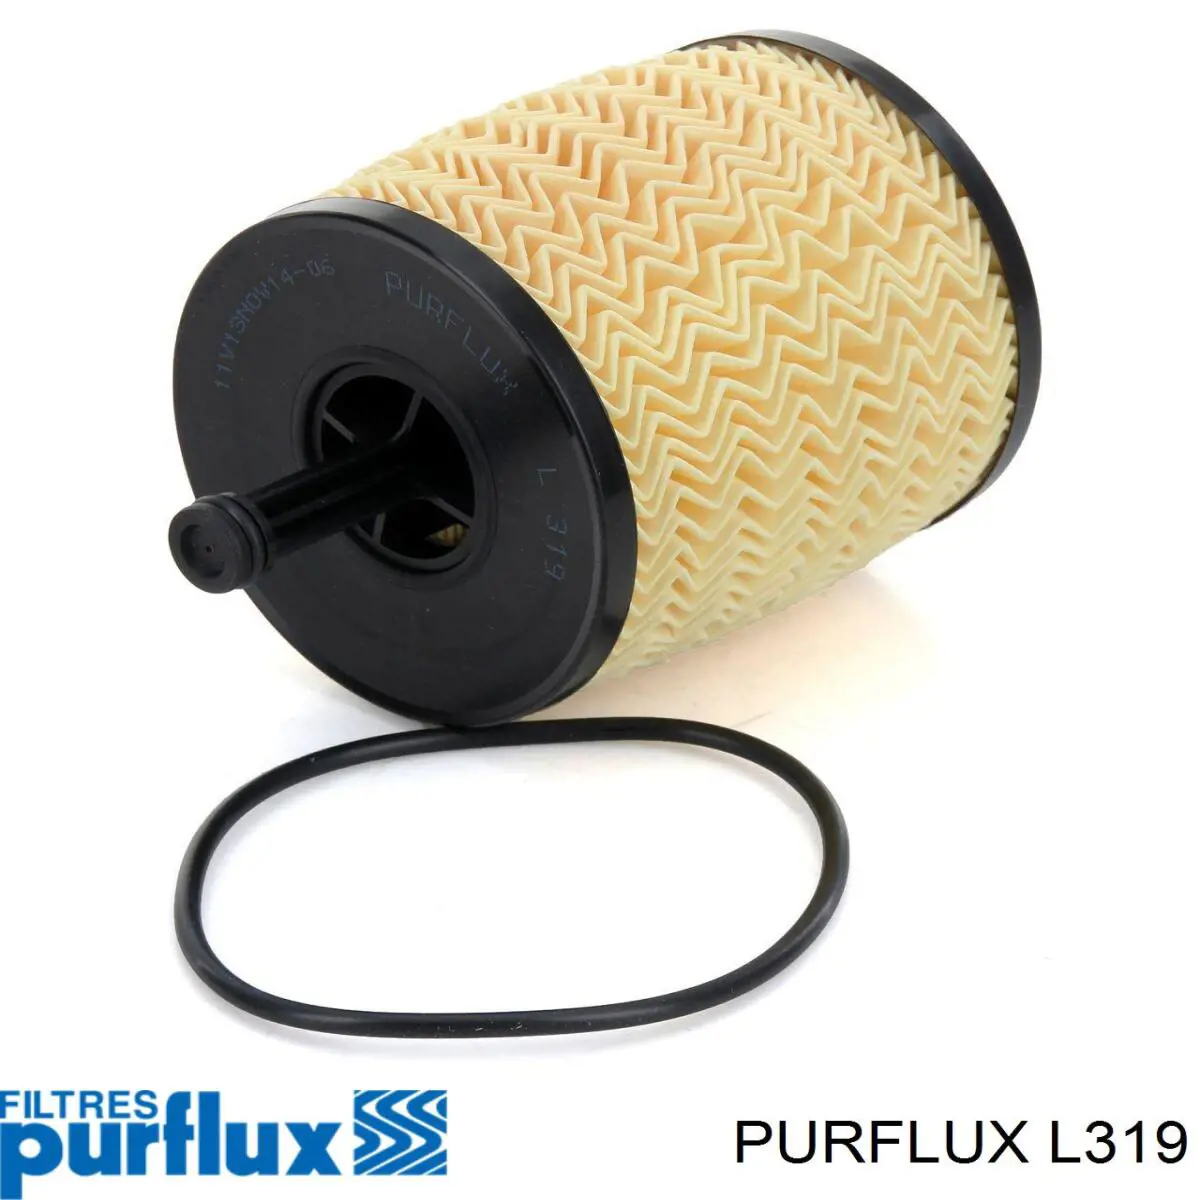 L319 Purflux filtro de aceite